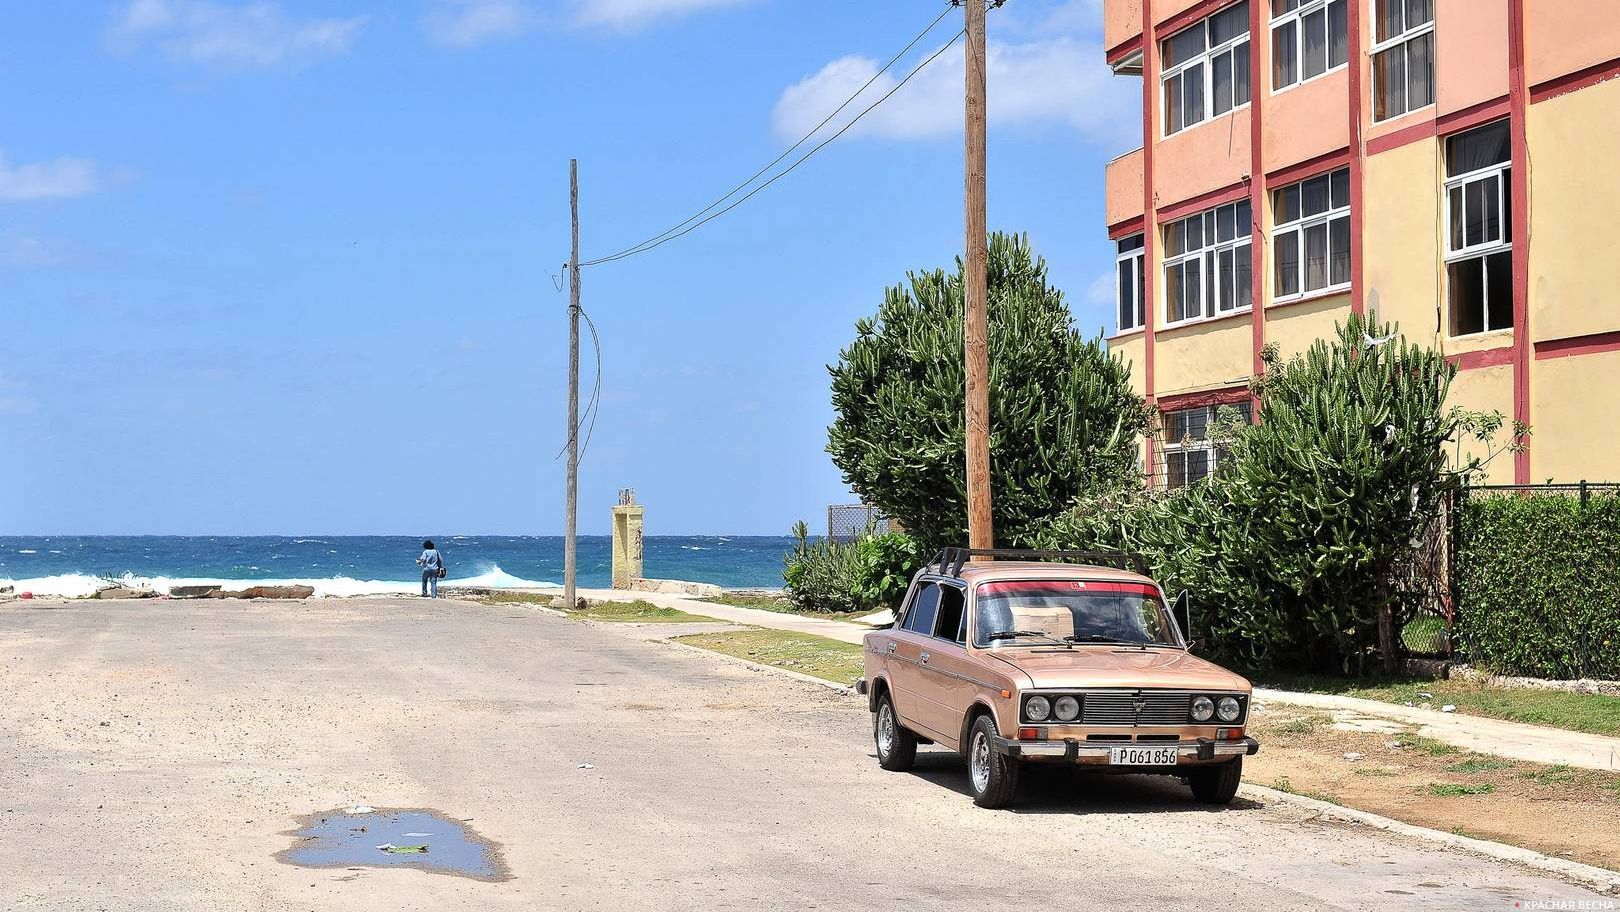 Автомобиль ВАЗ на улицах Гаваны. Куба